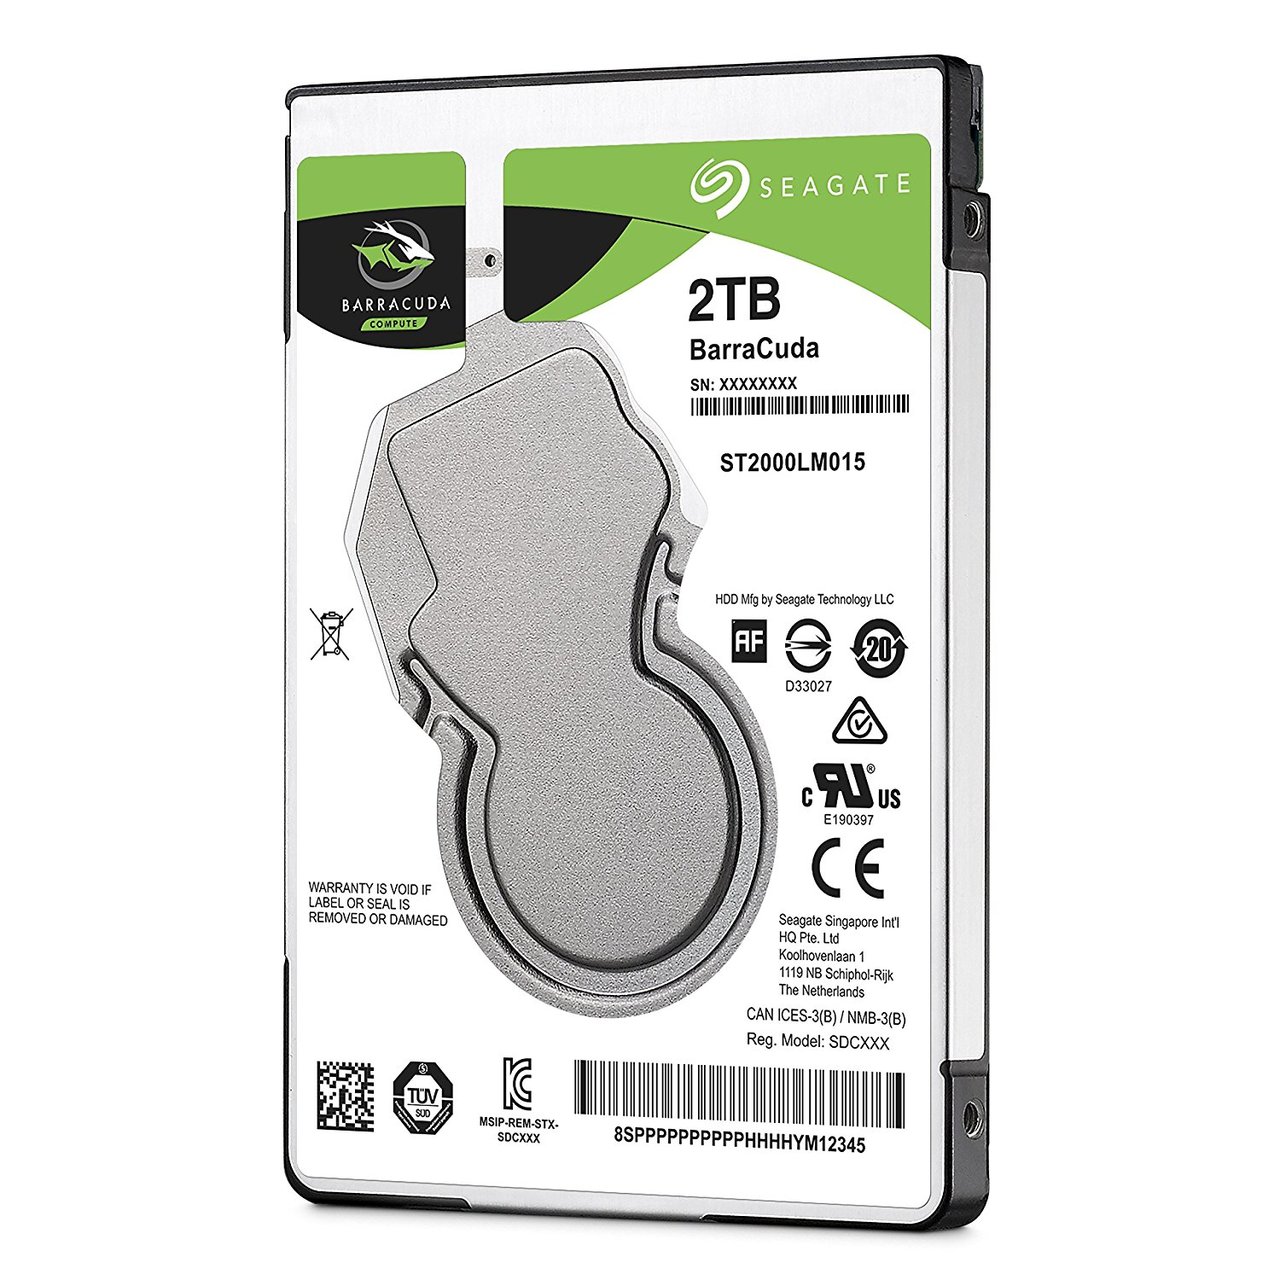 ST2000LM015 | 2TB hard drive | ps4 hard drive | barracuda 2tb 2.5